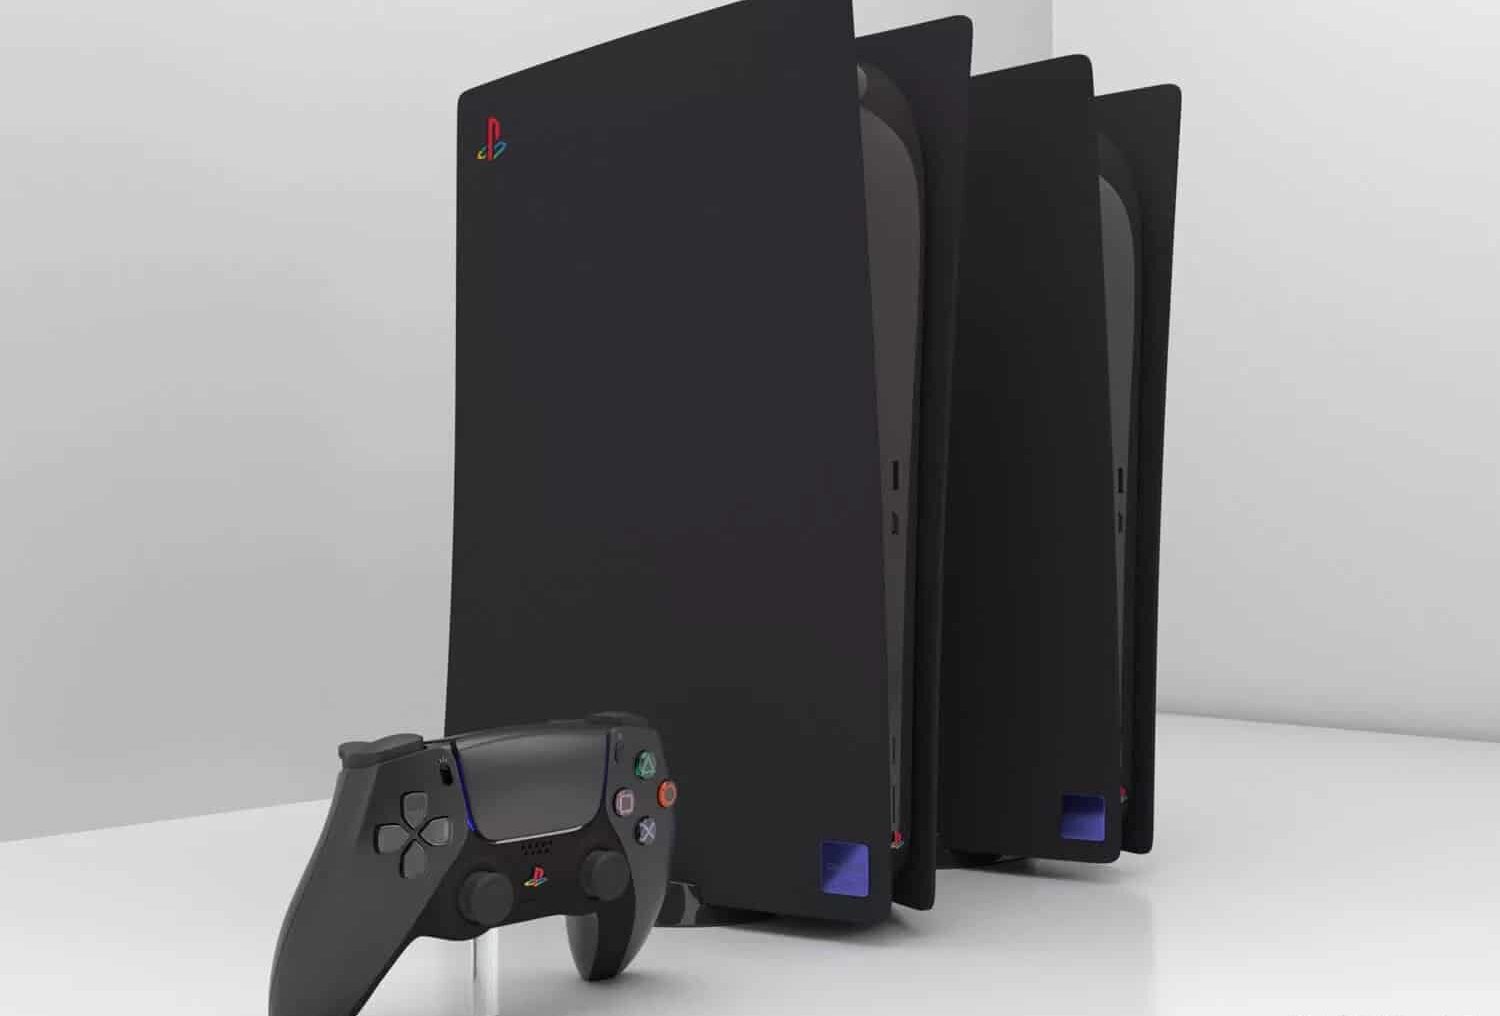 Rumor: PS5 Pro em desenvolvimento, poderá chegar no final de 2024